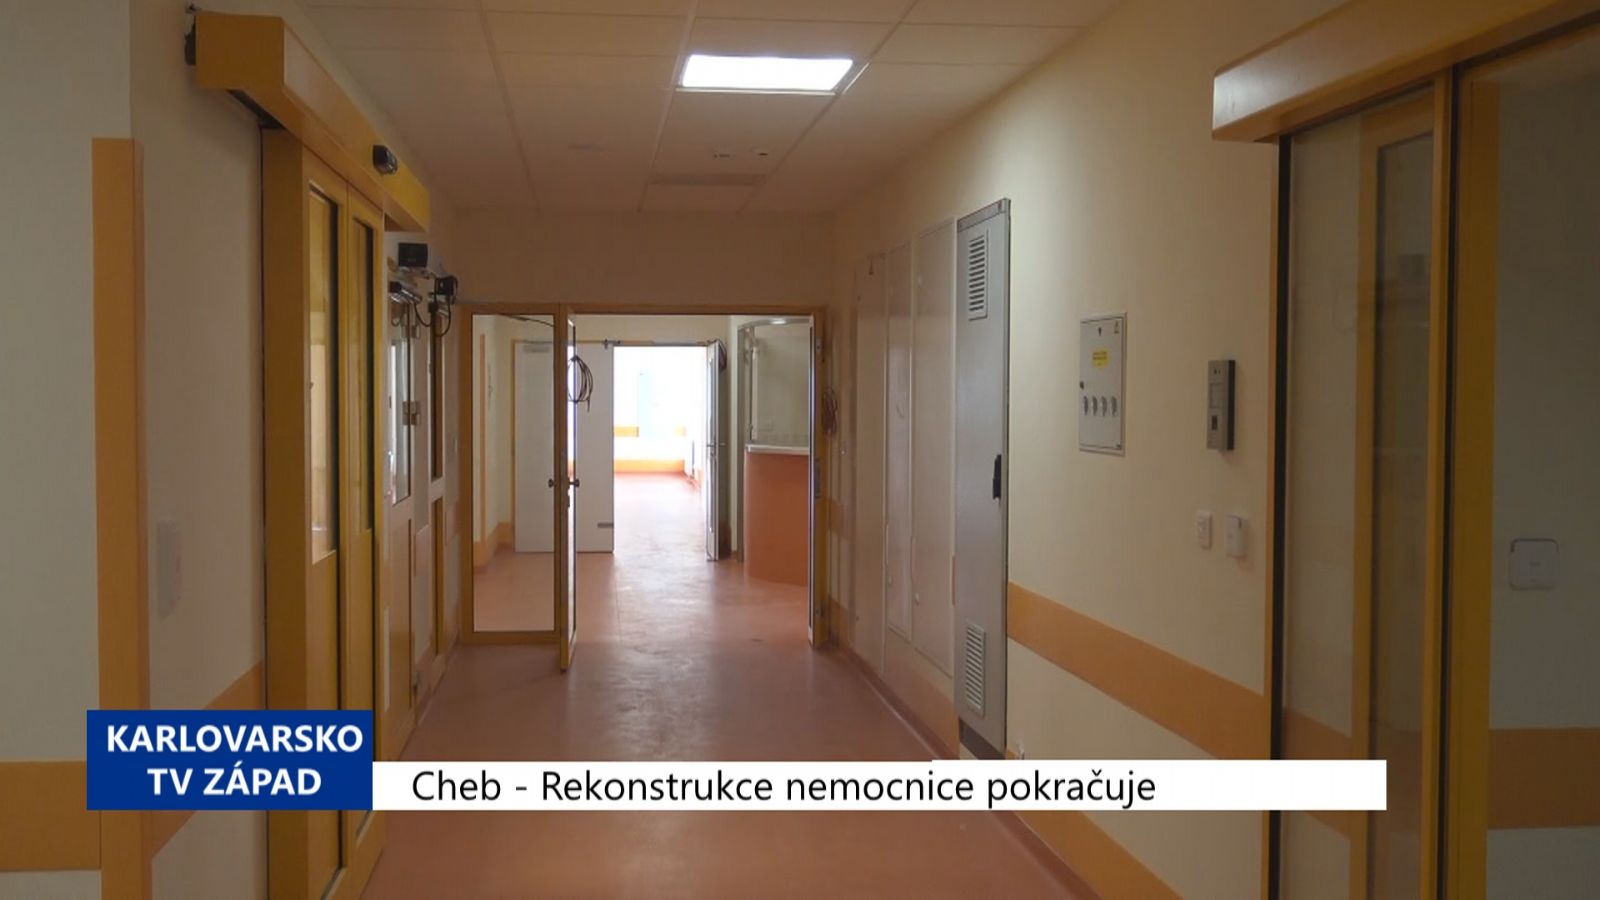 Cheb: Rekonstrukce nemocnice pokračuje (TV Západ)